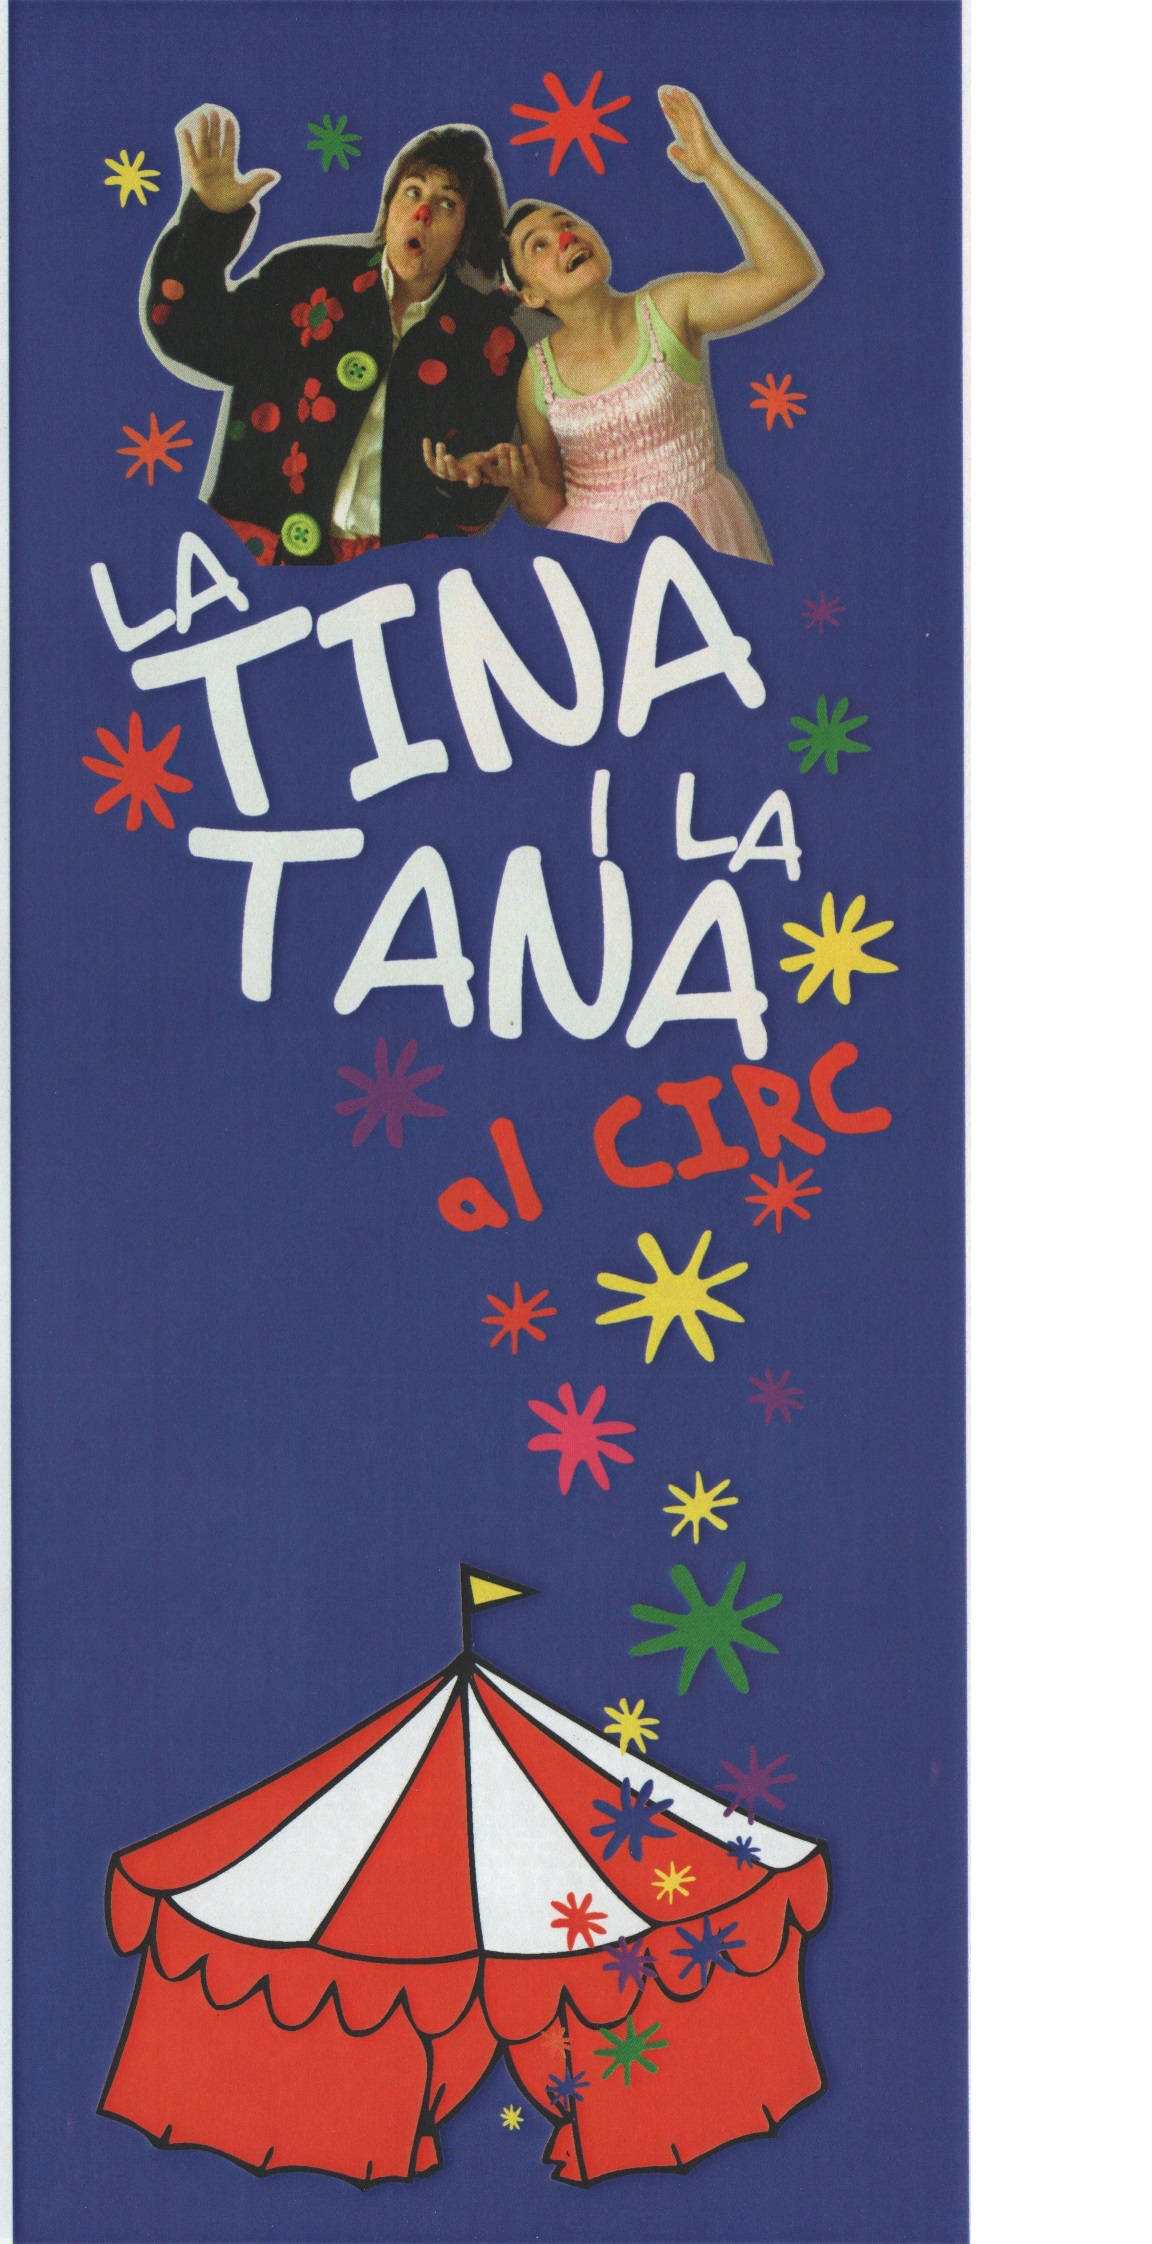 Piruleta Contes / La Quàntica Teatre-Biblionadons: La Tina i la Tana al circ dels més petits 